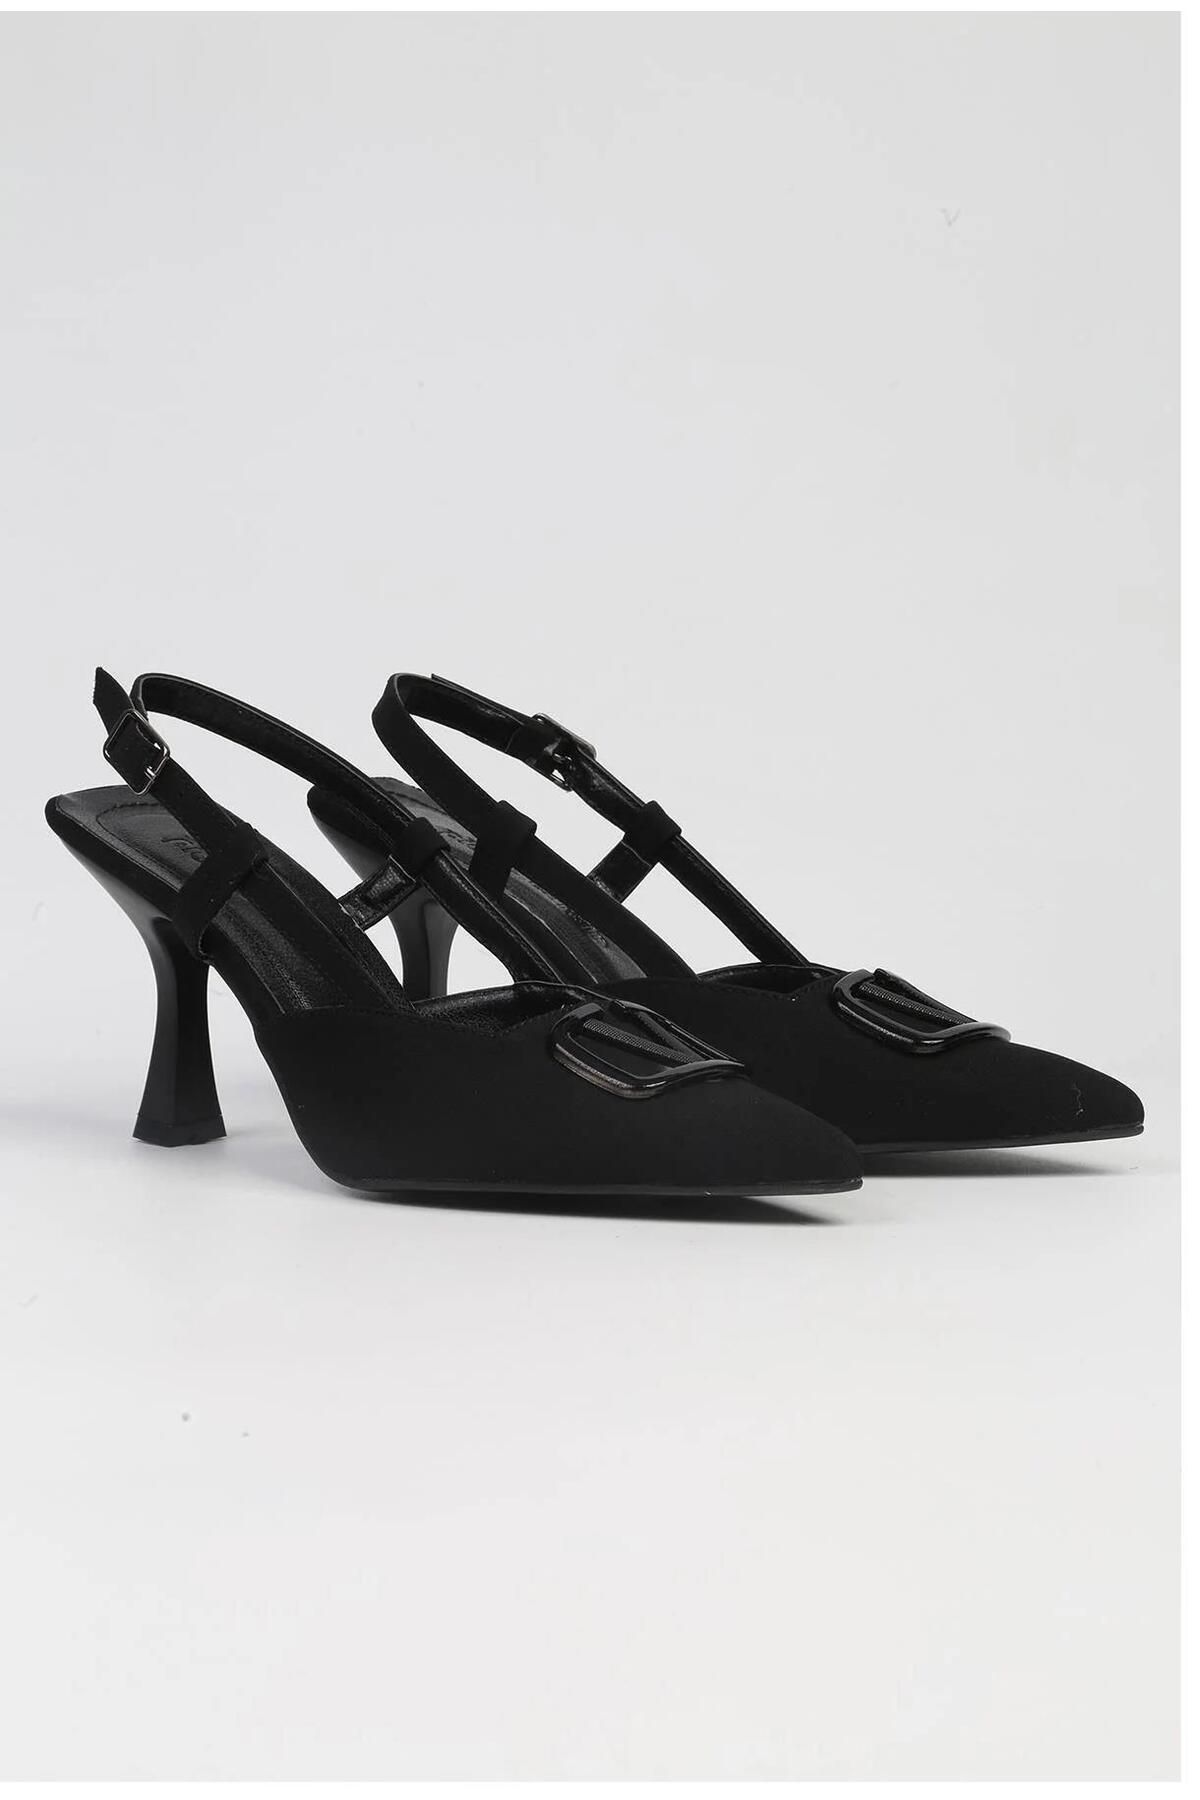 Pierre Cardin PC-53005 Siyah Kadın Topuklu Ayakkabı